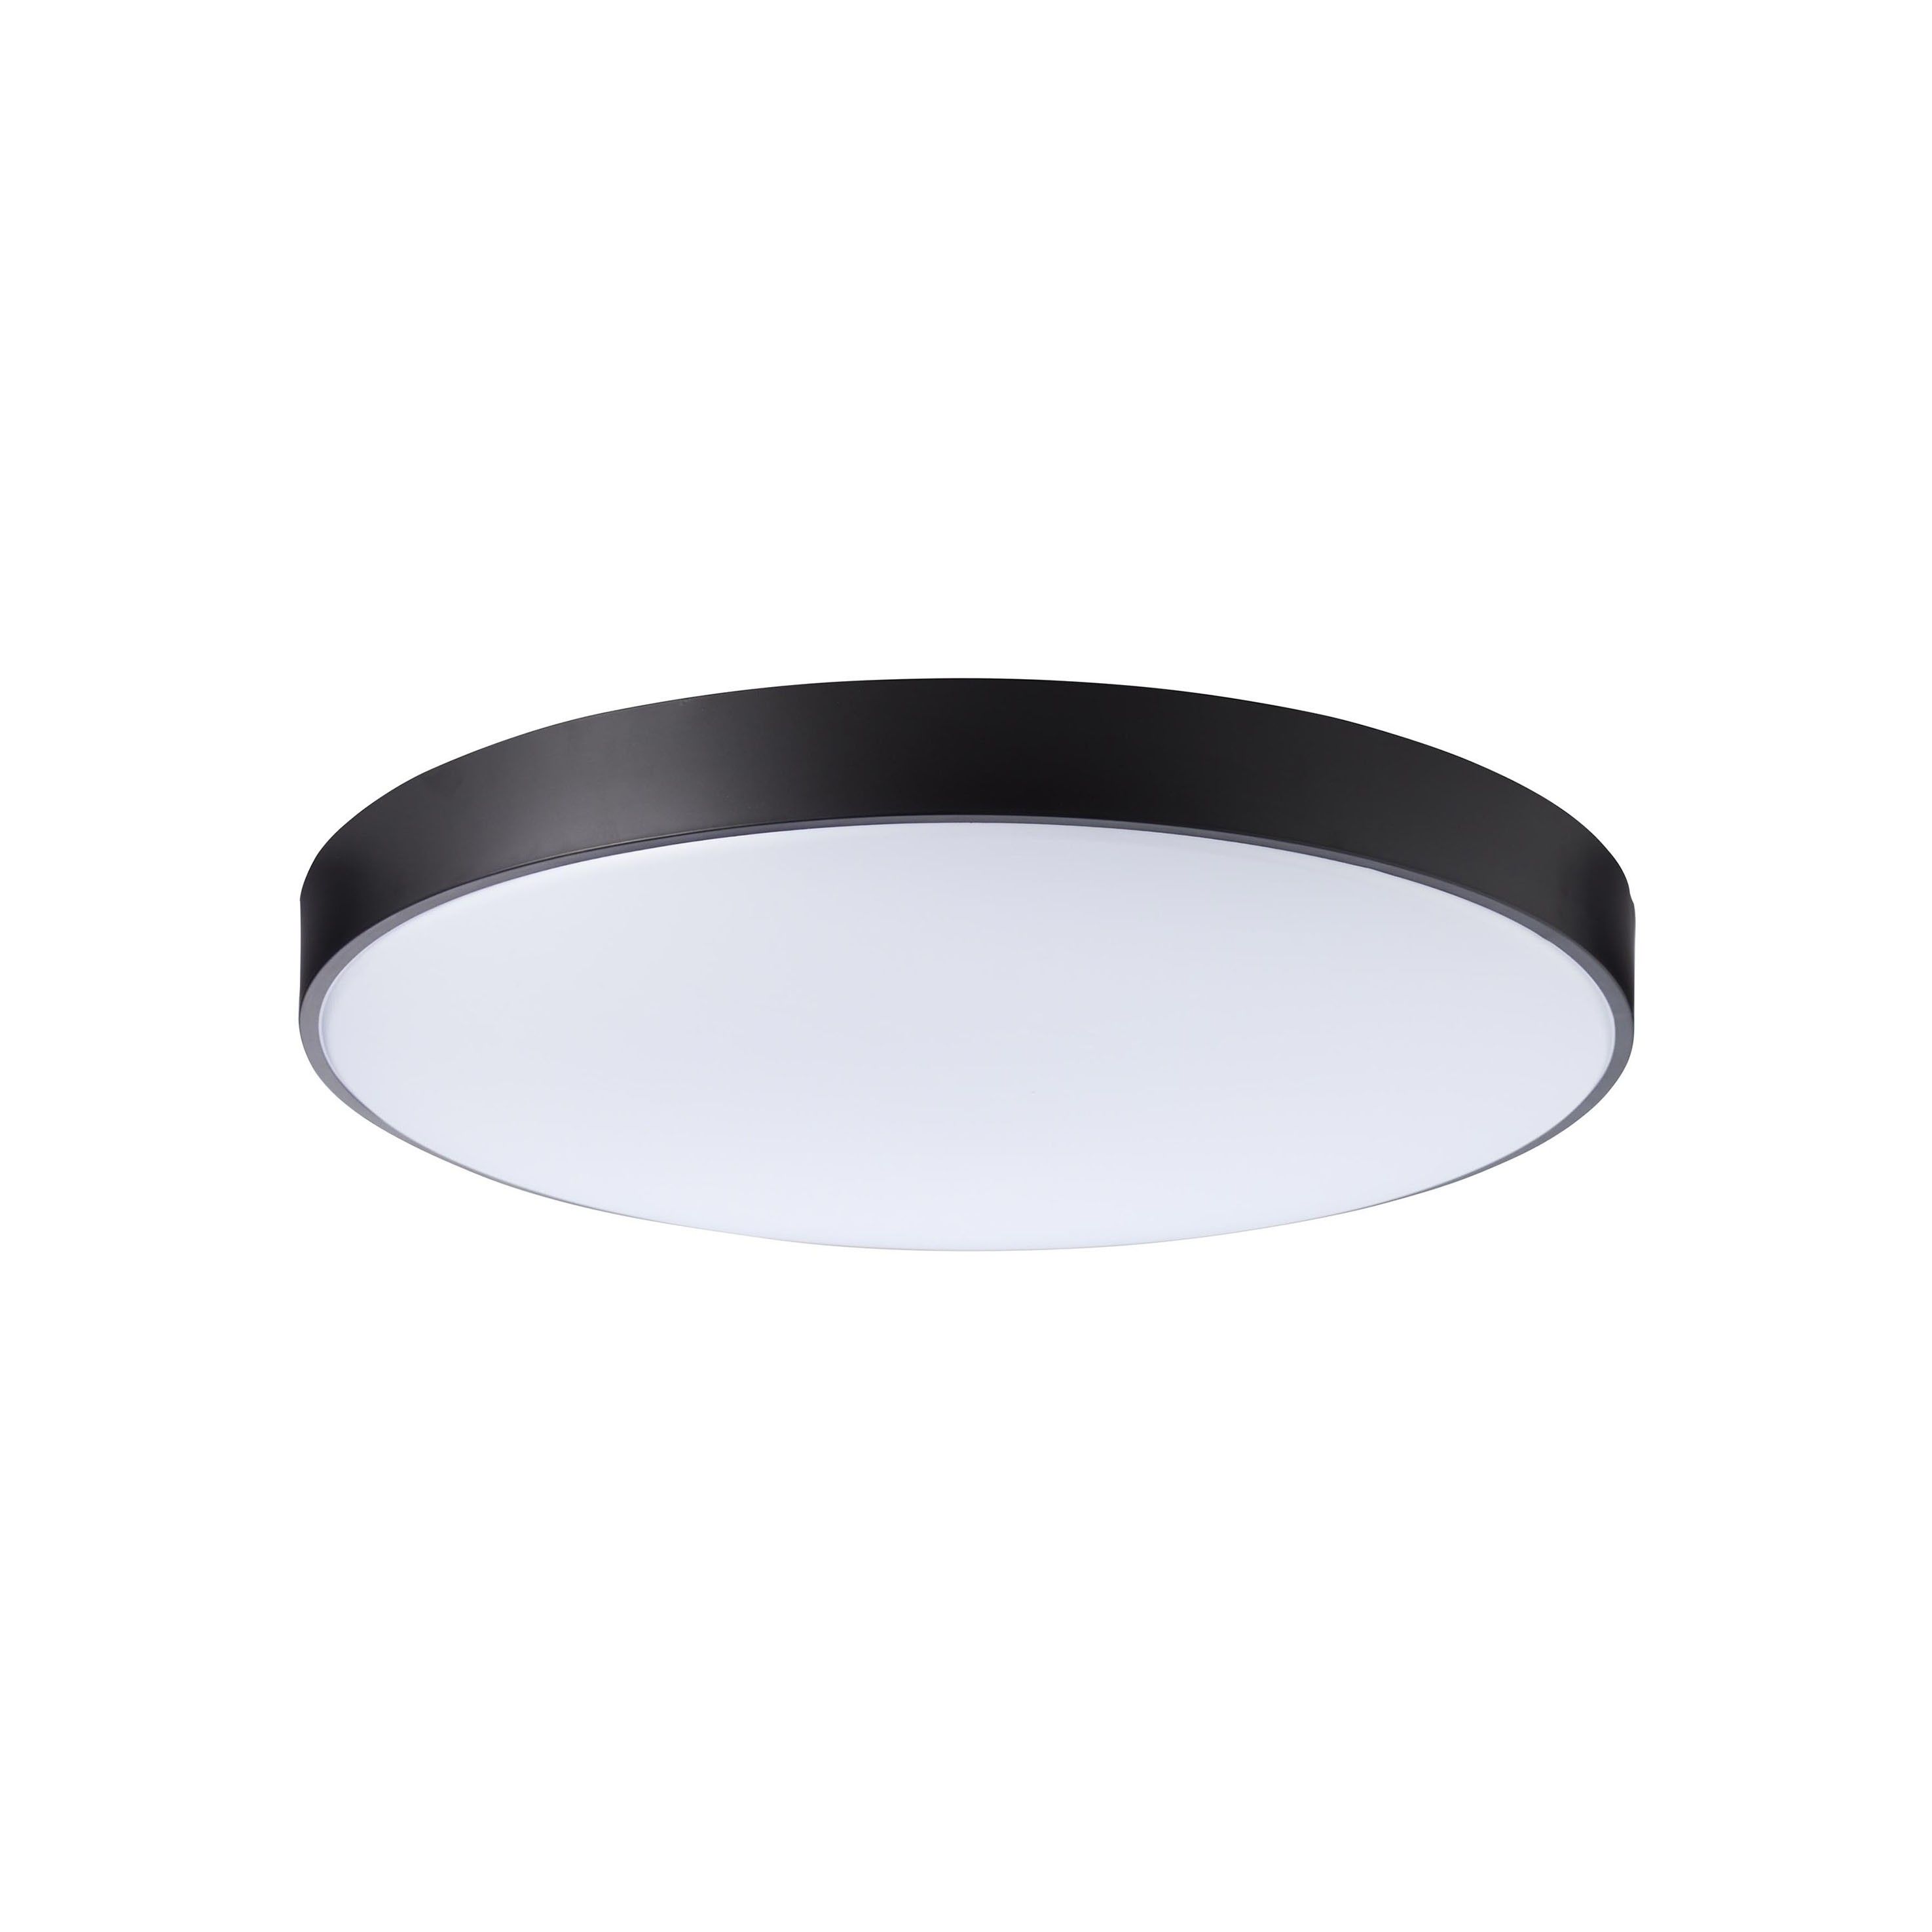 Slimline - plafondverlichting afstandsbediening - Ø 78 x 15 cm - 80W dimbare LED incl. - wit en zwart | Lichtkoning